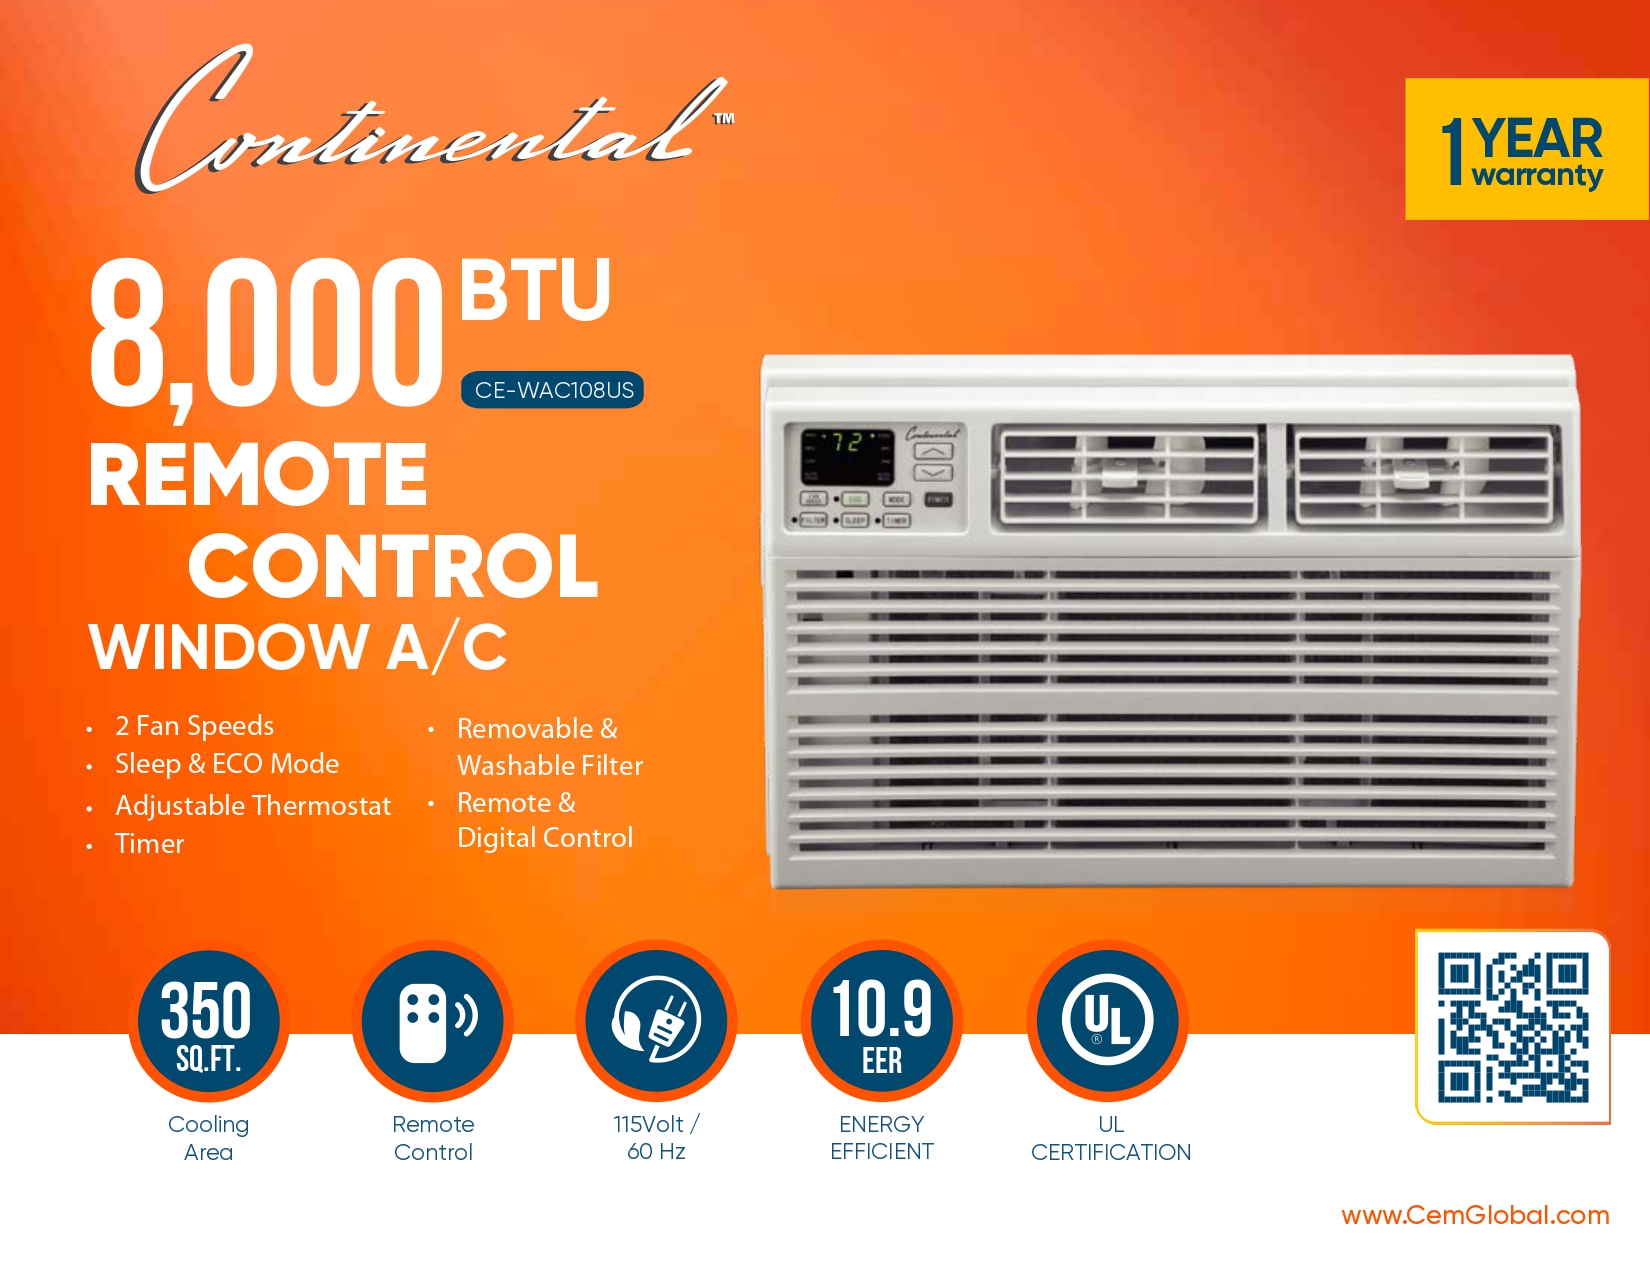 8,000 BTU REMOTE CONTROL WINDOW A/C